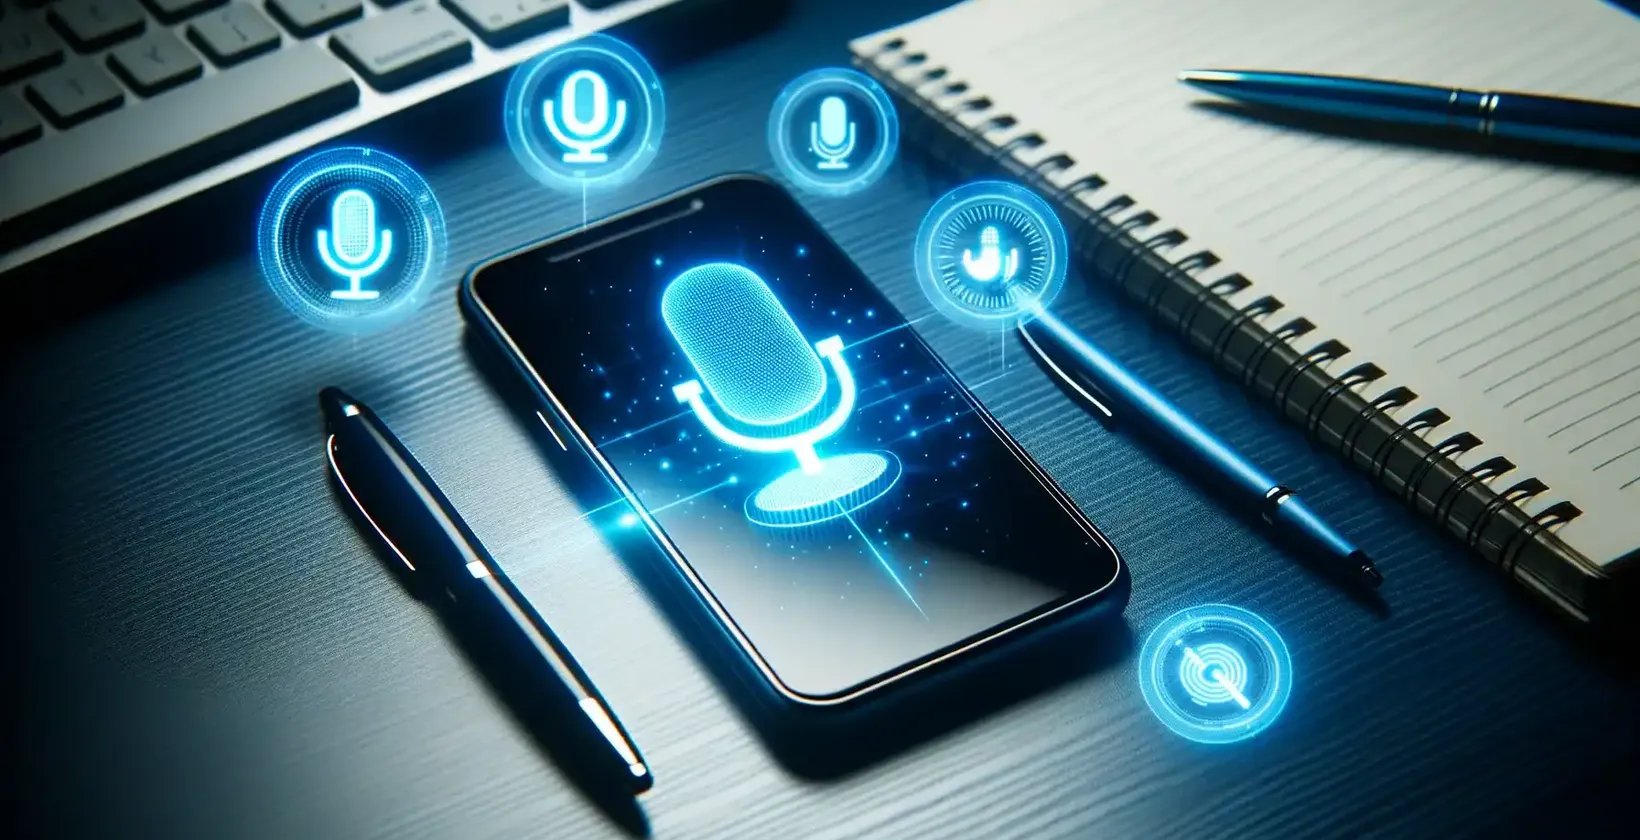 Samsung cihazlarda videoya metin ekleme, masa üzerinde sesli komut sembolleri görüntüleyen bir Samsung akıllı telefon ile gösterilmiştir